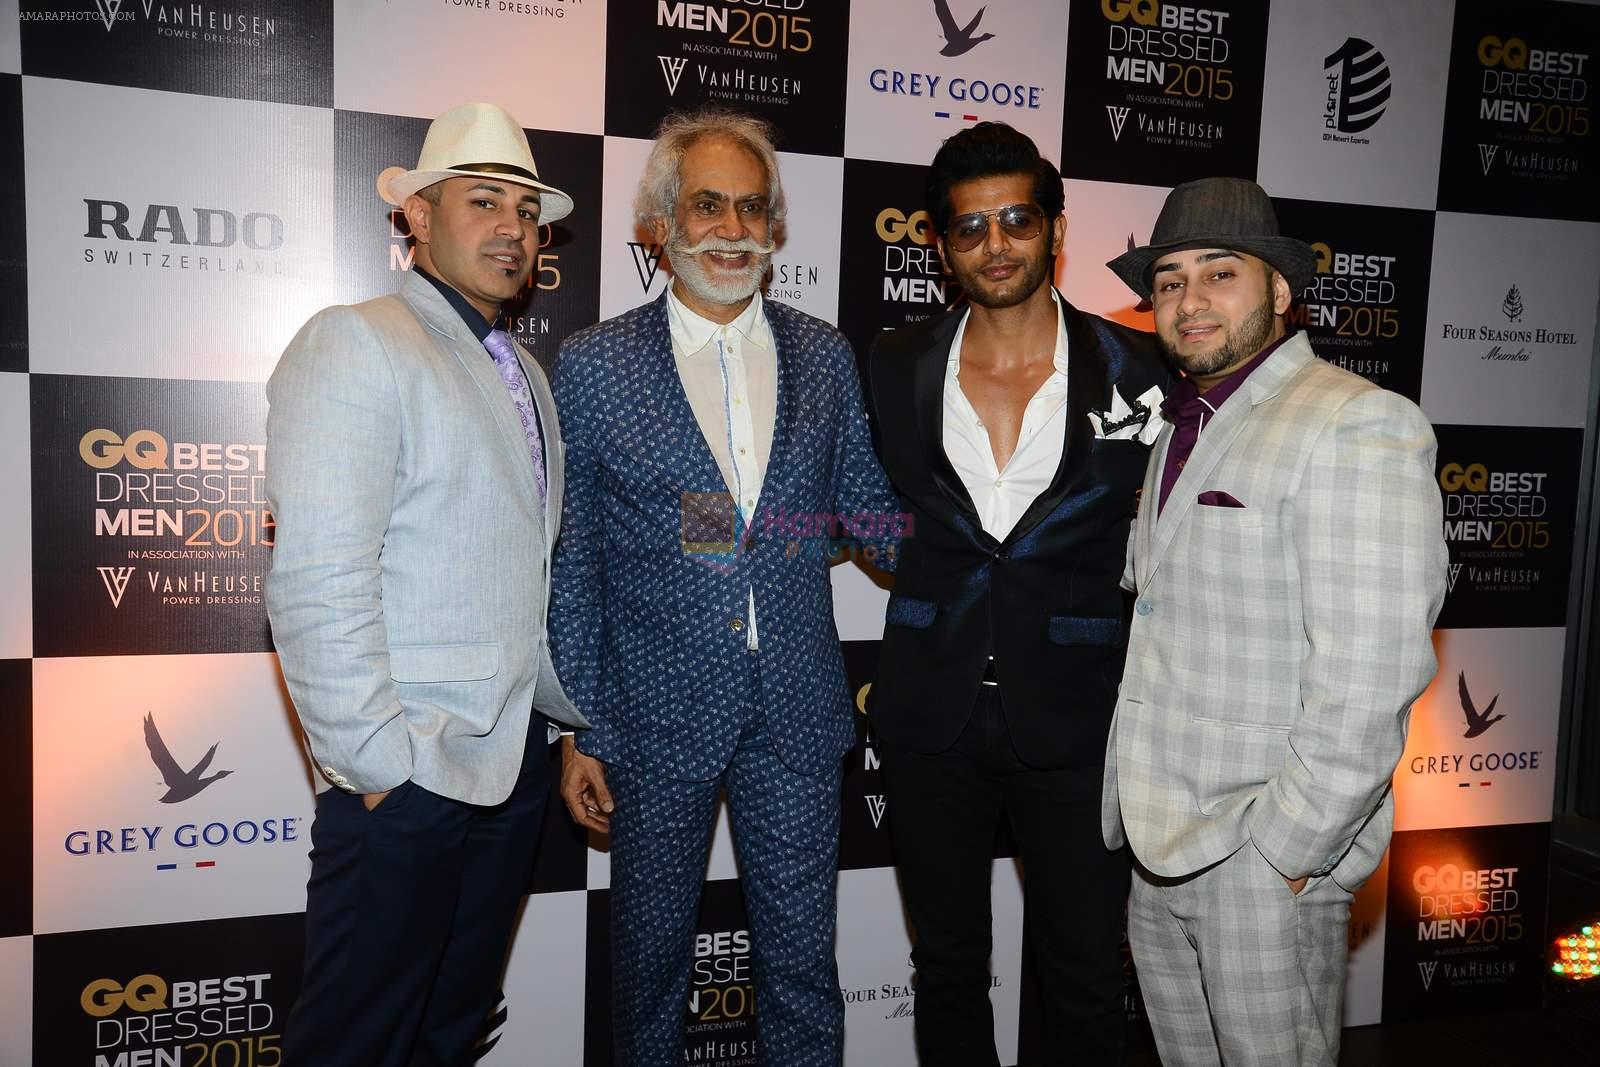 Karanvir Bohra at GQ Best-Dressed Men in India 2015 in Mumbai on 12th June 2015